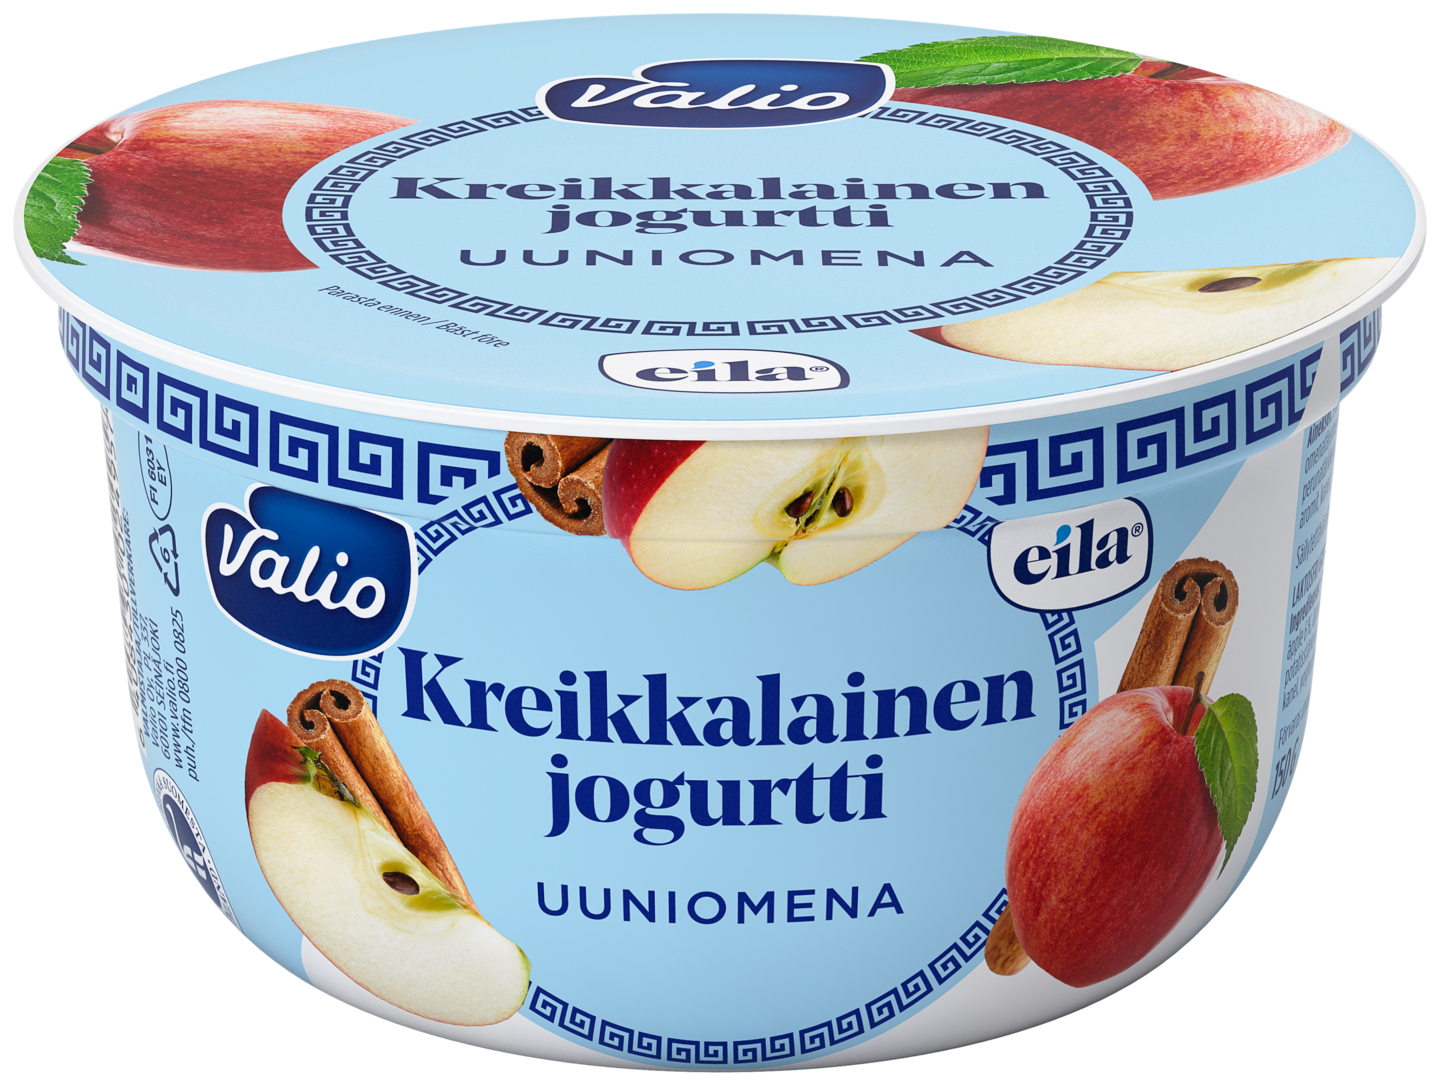 Valio kreikkalainen jogurtti 150g uuniomena laktoositon